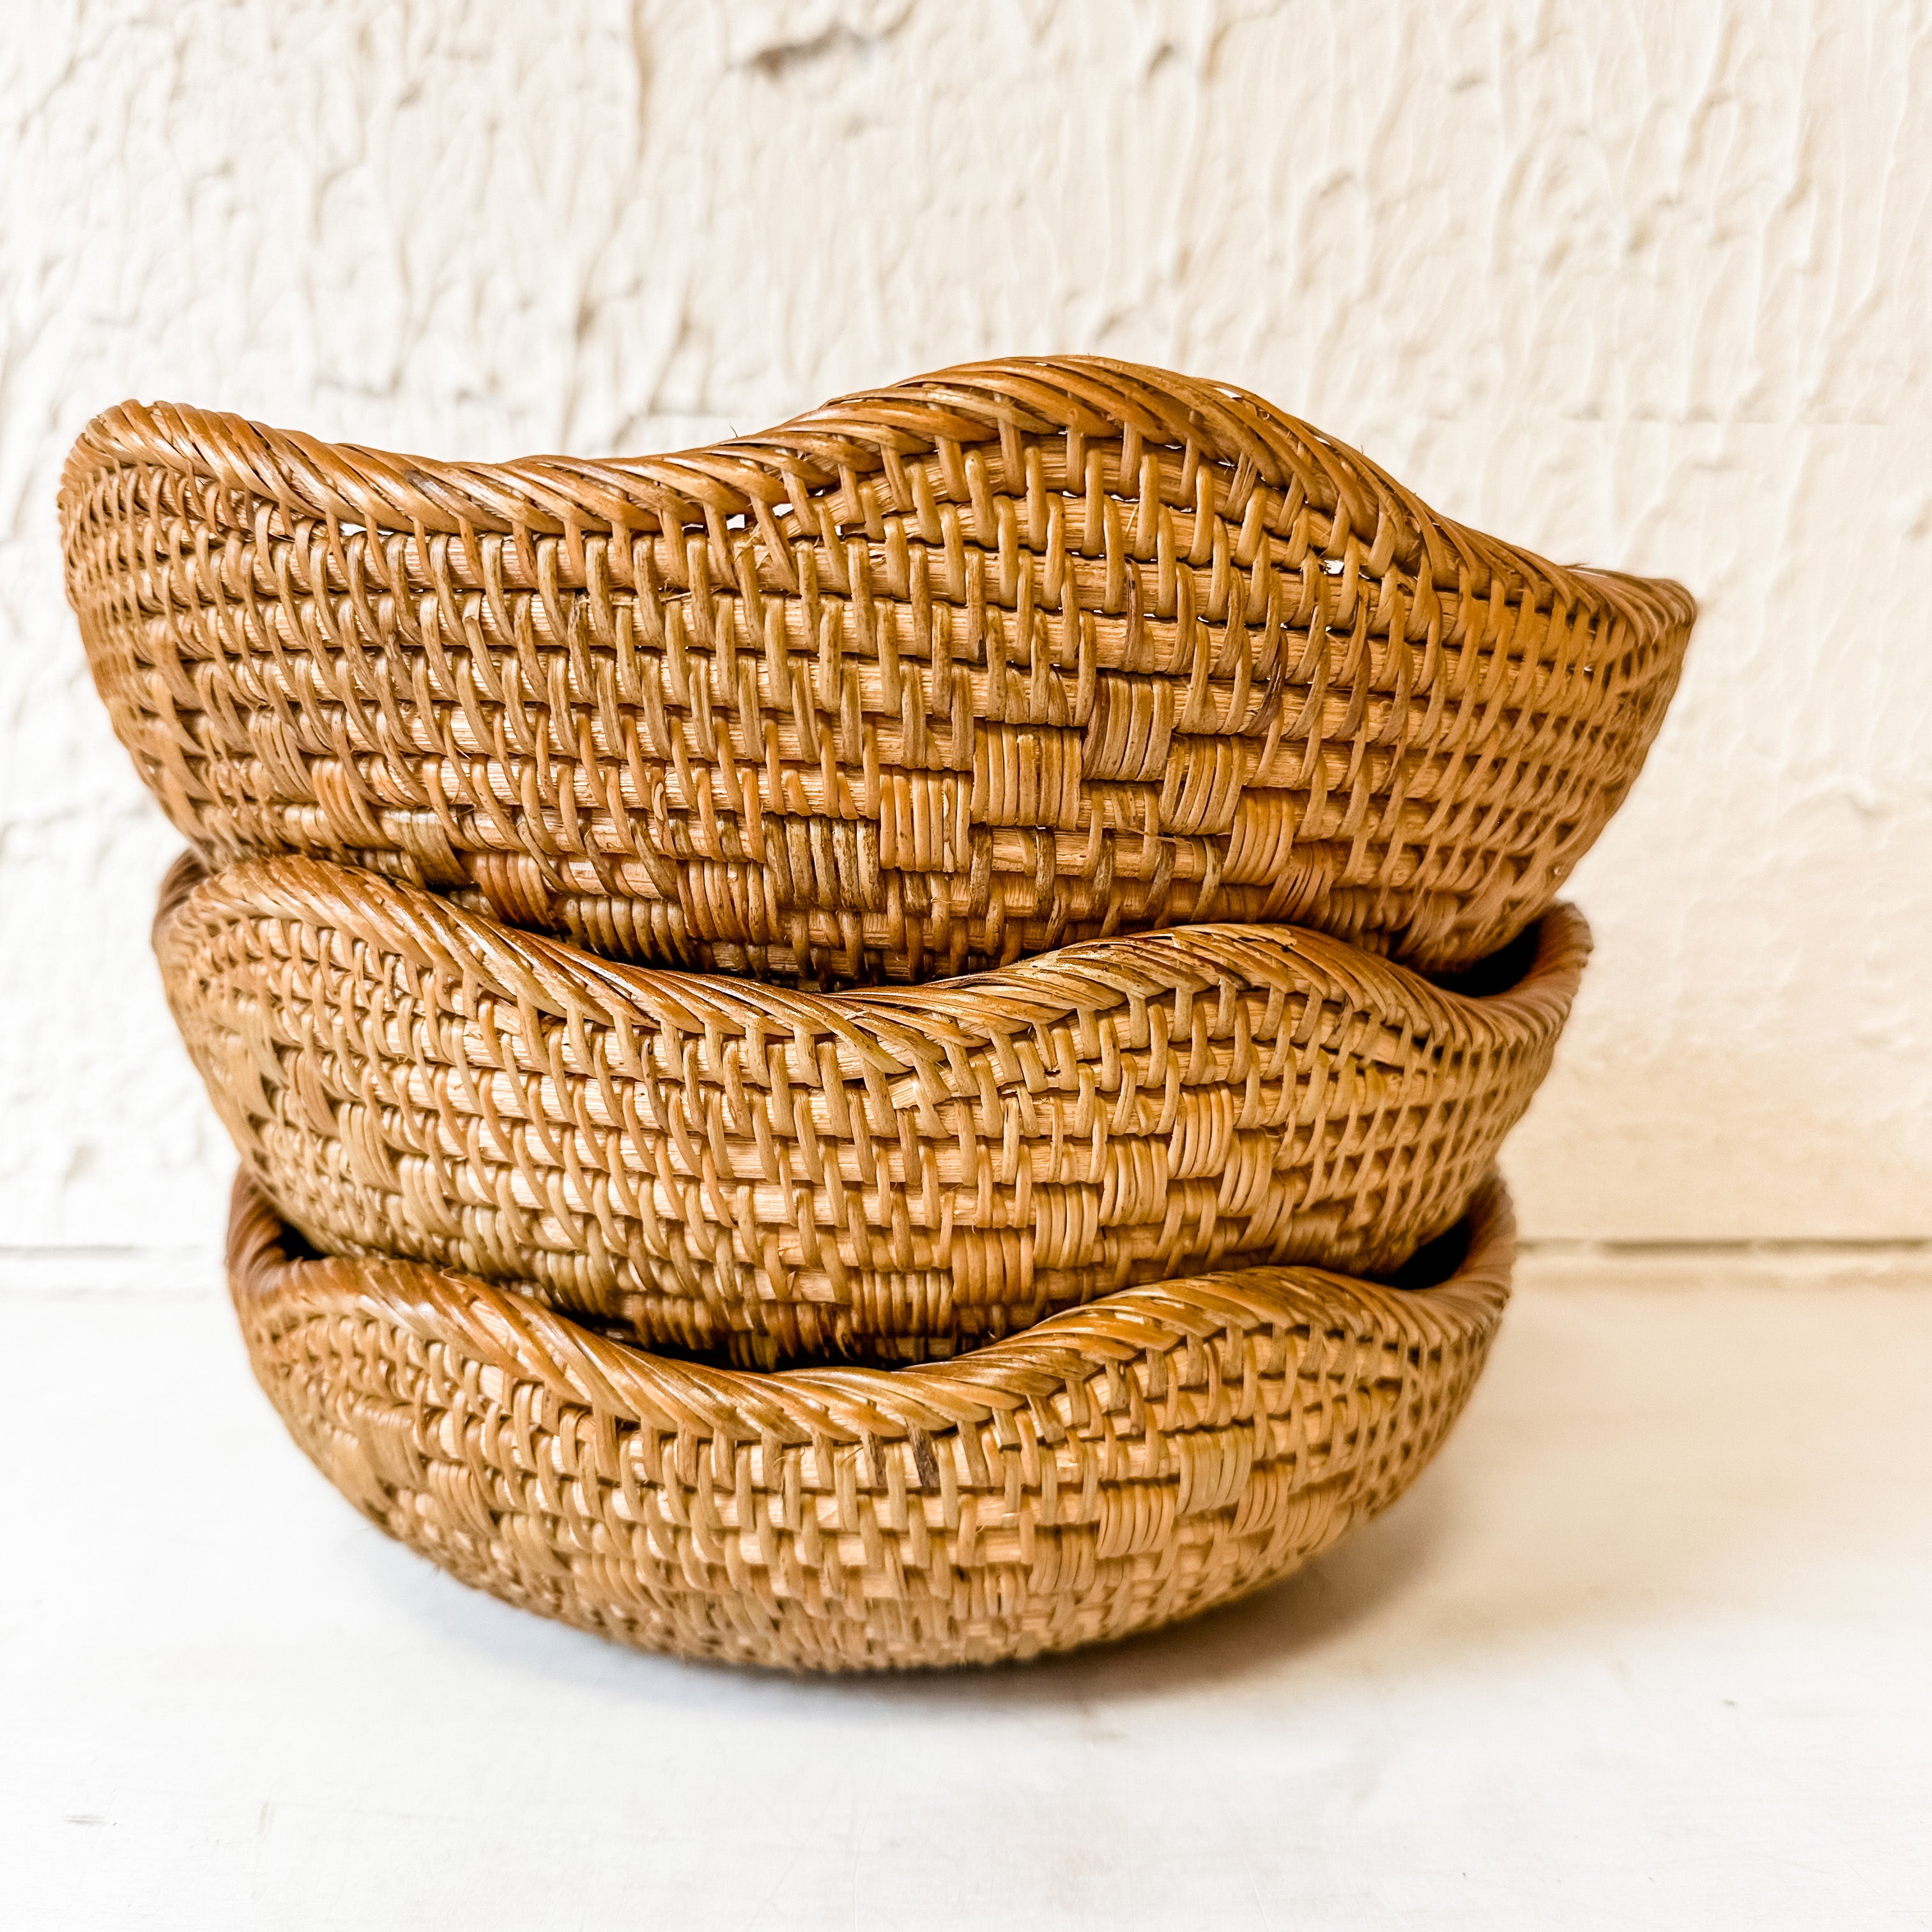 Hand-Woven Round Rattan Baskets